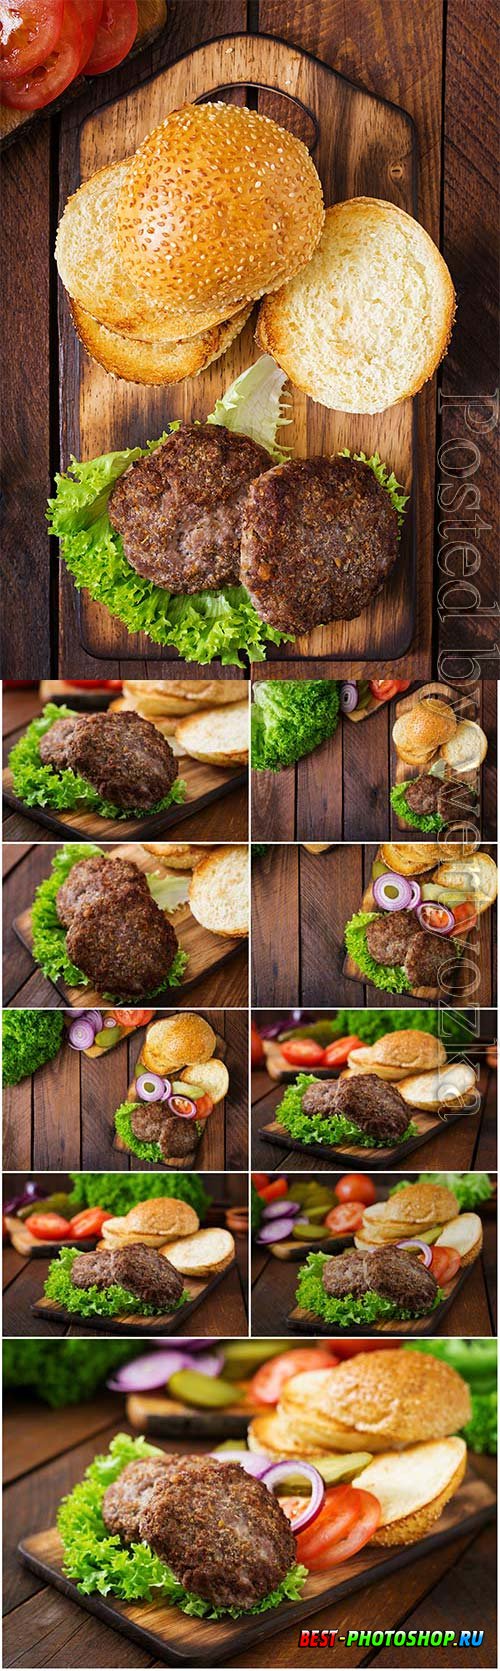 Cooking hamburger stock photo